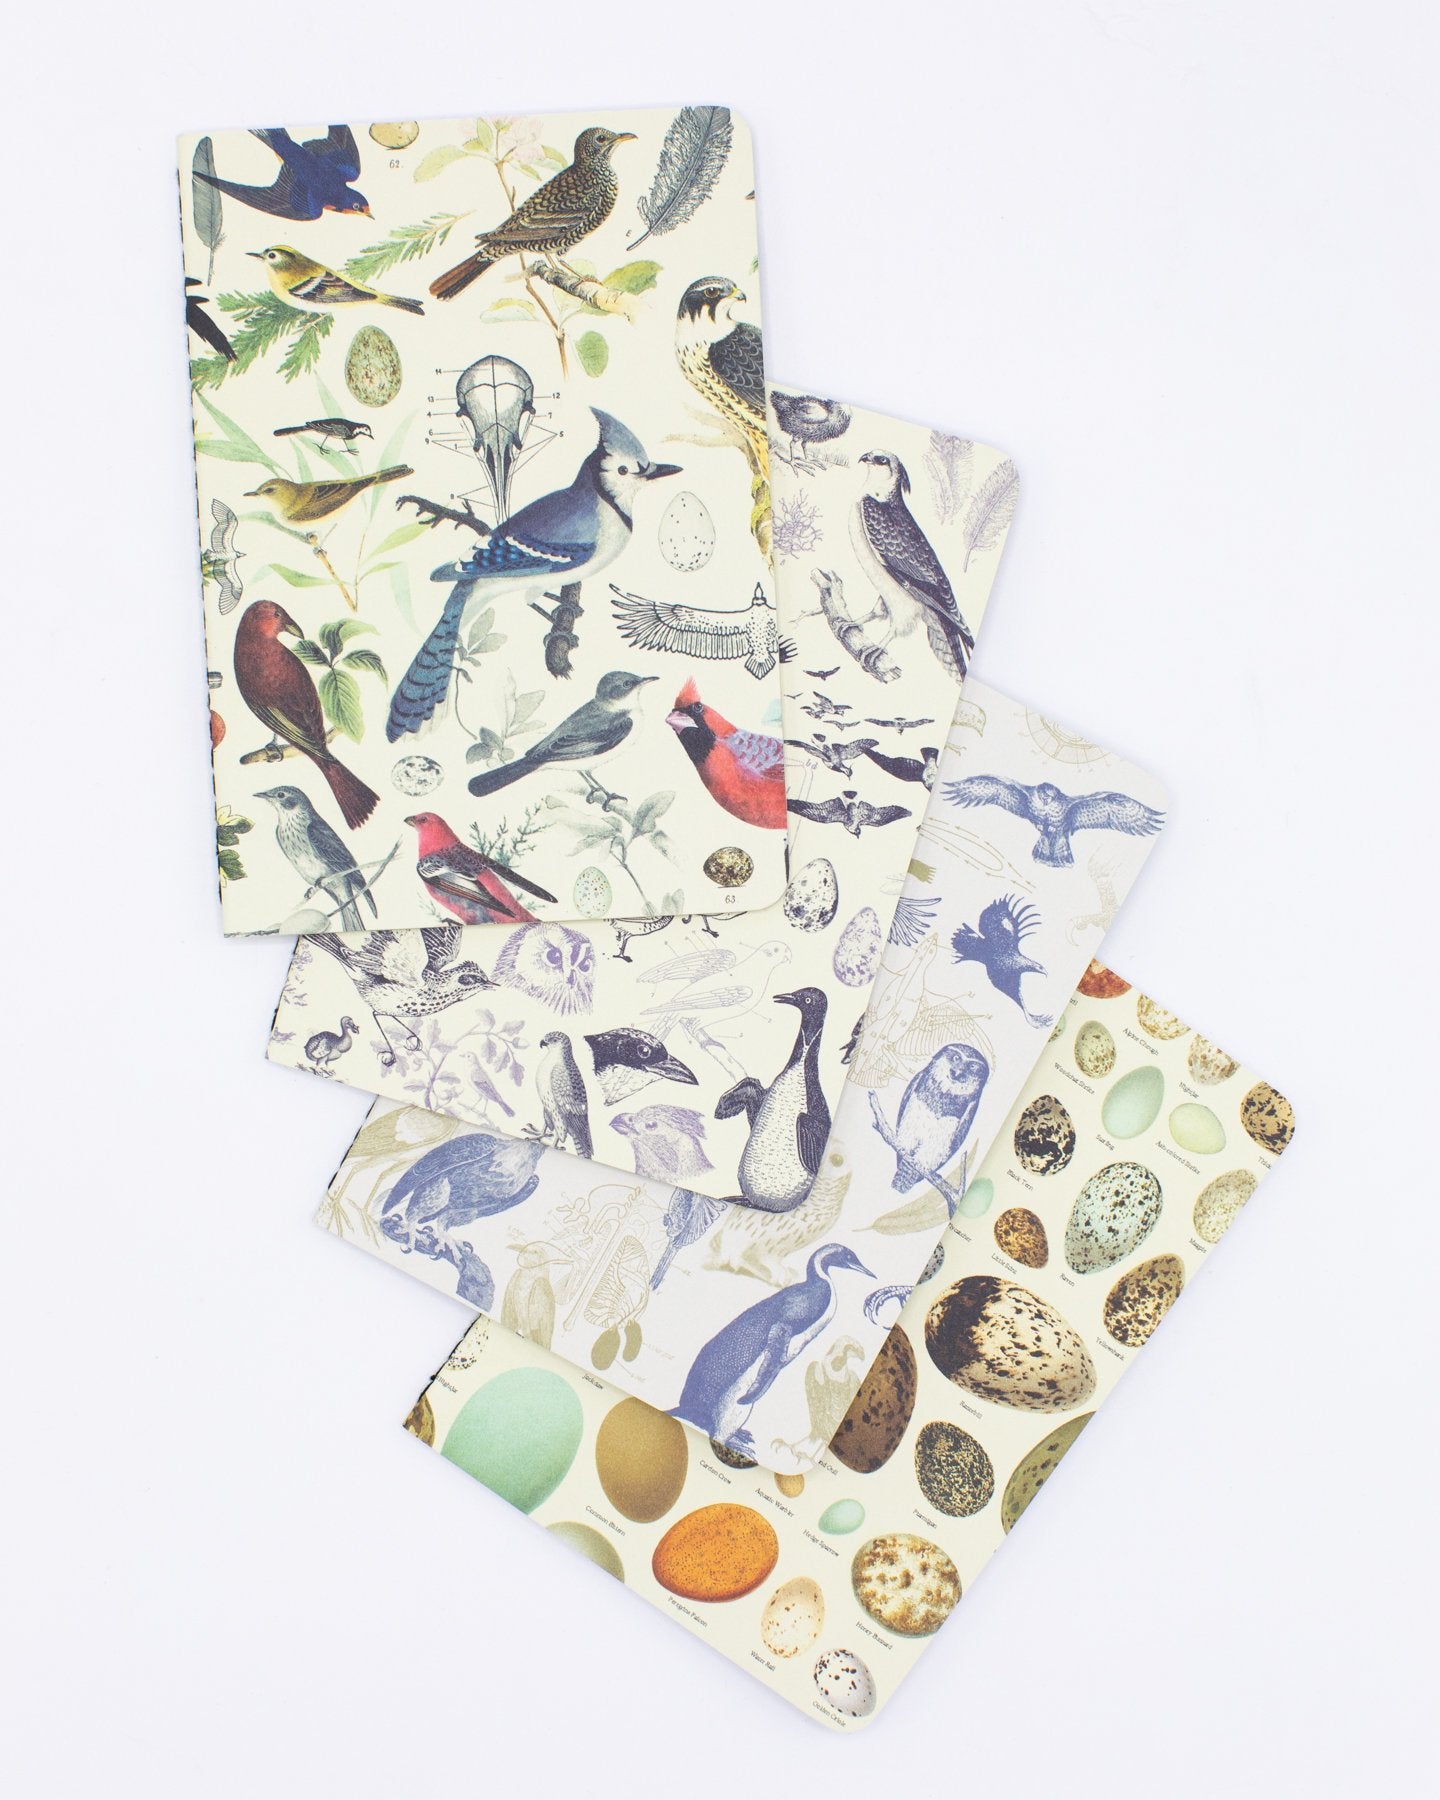 Oiseaux : Ornithologie Pocket Notebook 4-pack